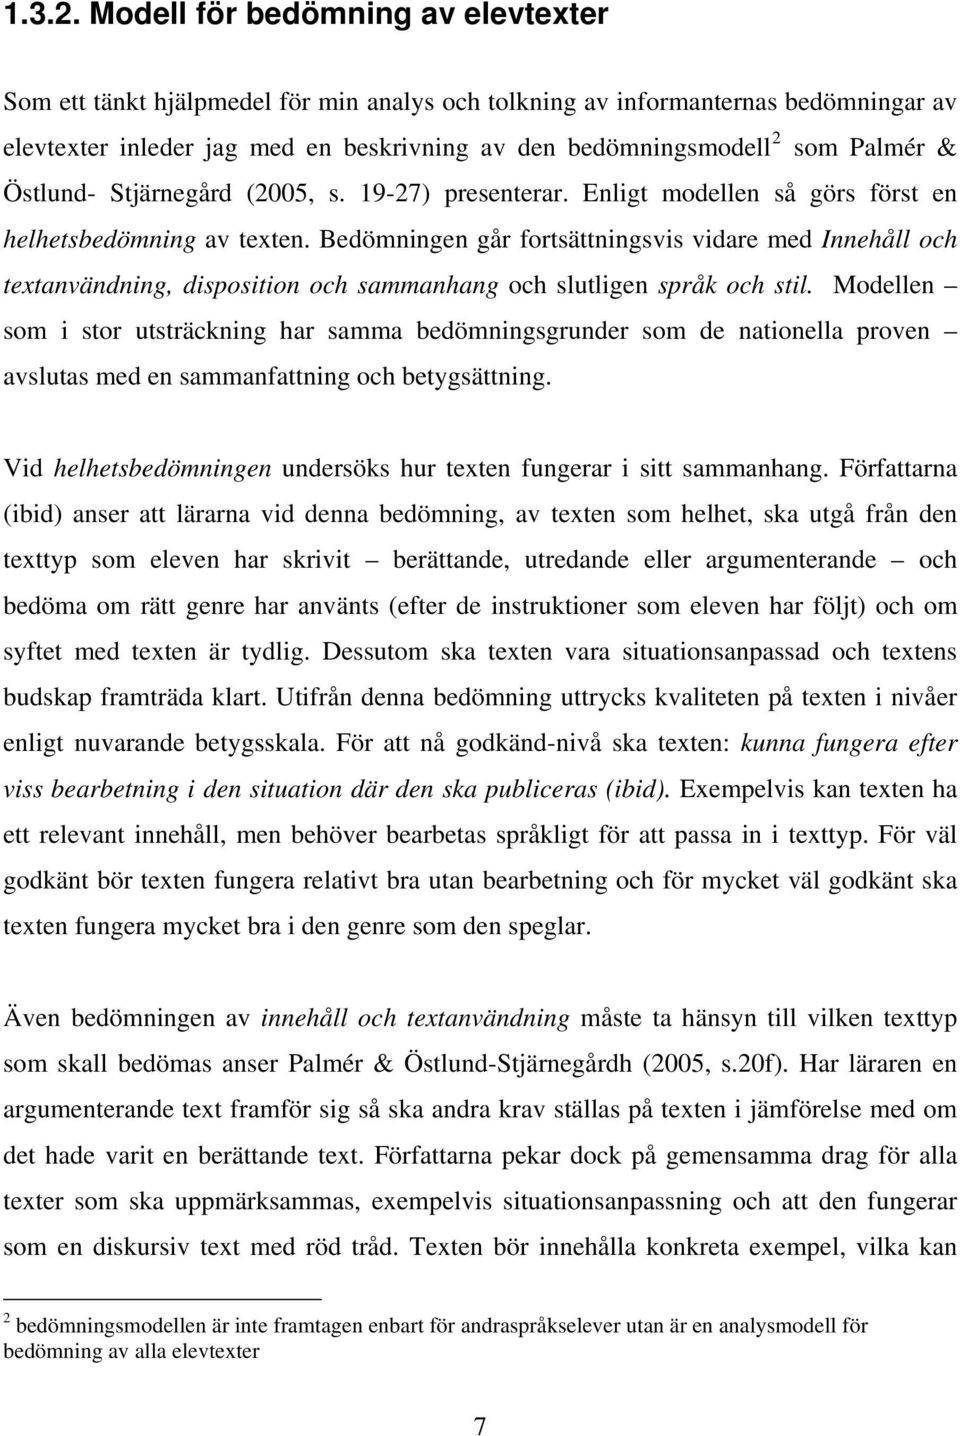 & Östlund- Stjärnegård (2005, s. 19-27) presenterar. Enligt modellen så görs först en helhetsbedömning av texten.